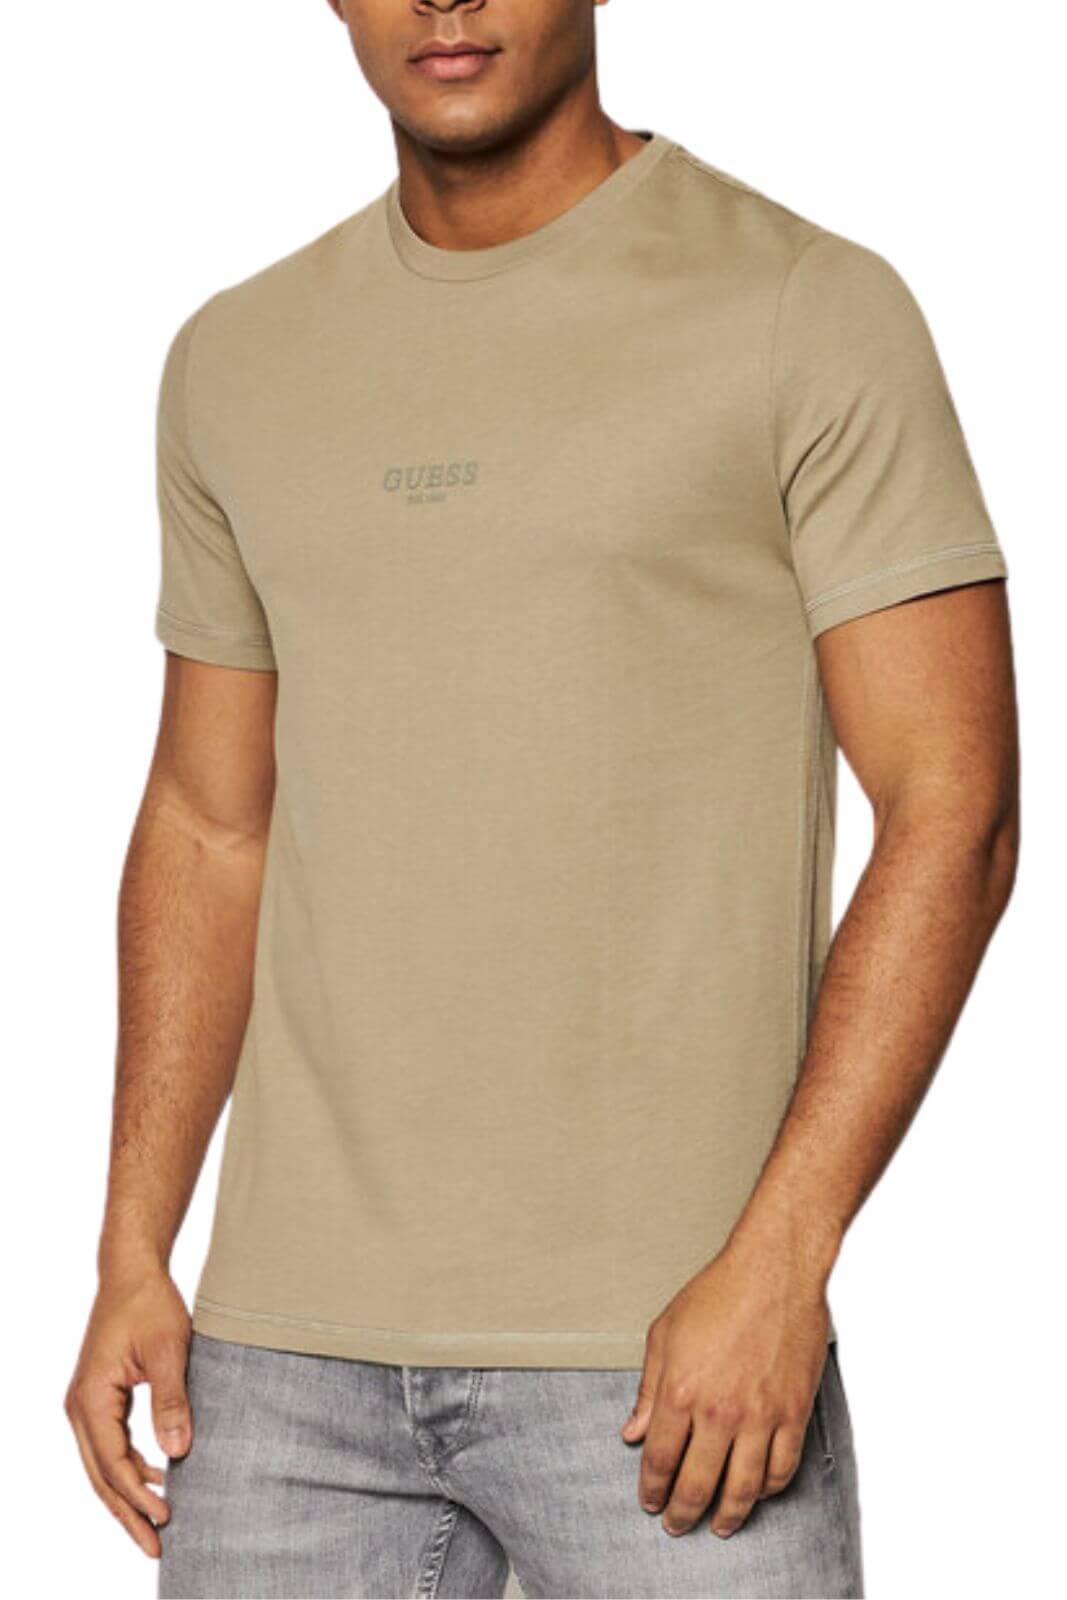 Guess T-Shirt Uomo organic cotton